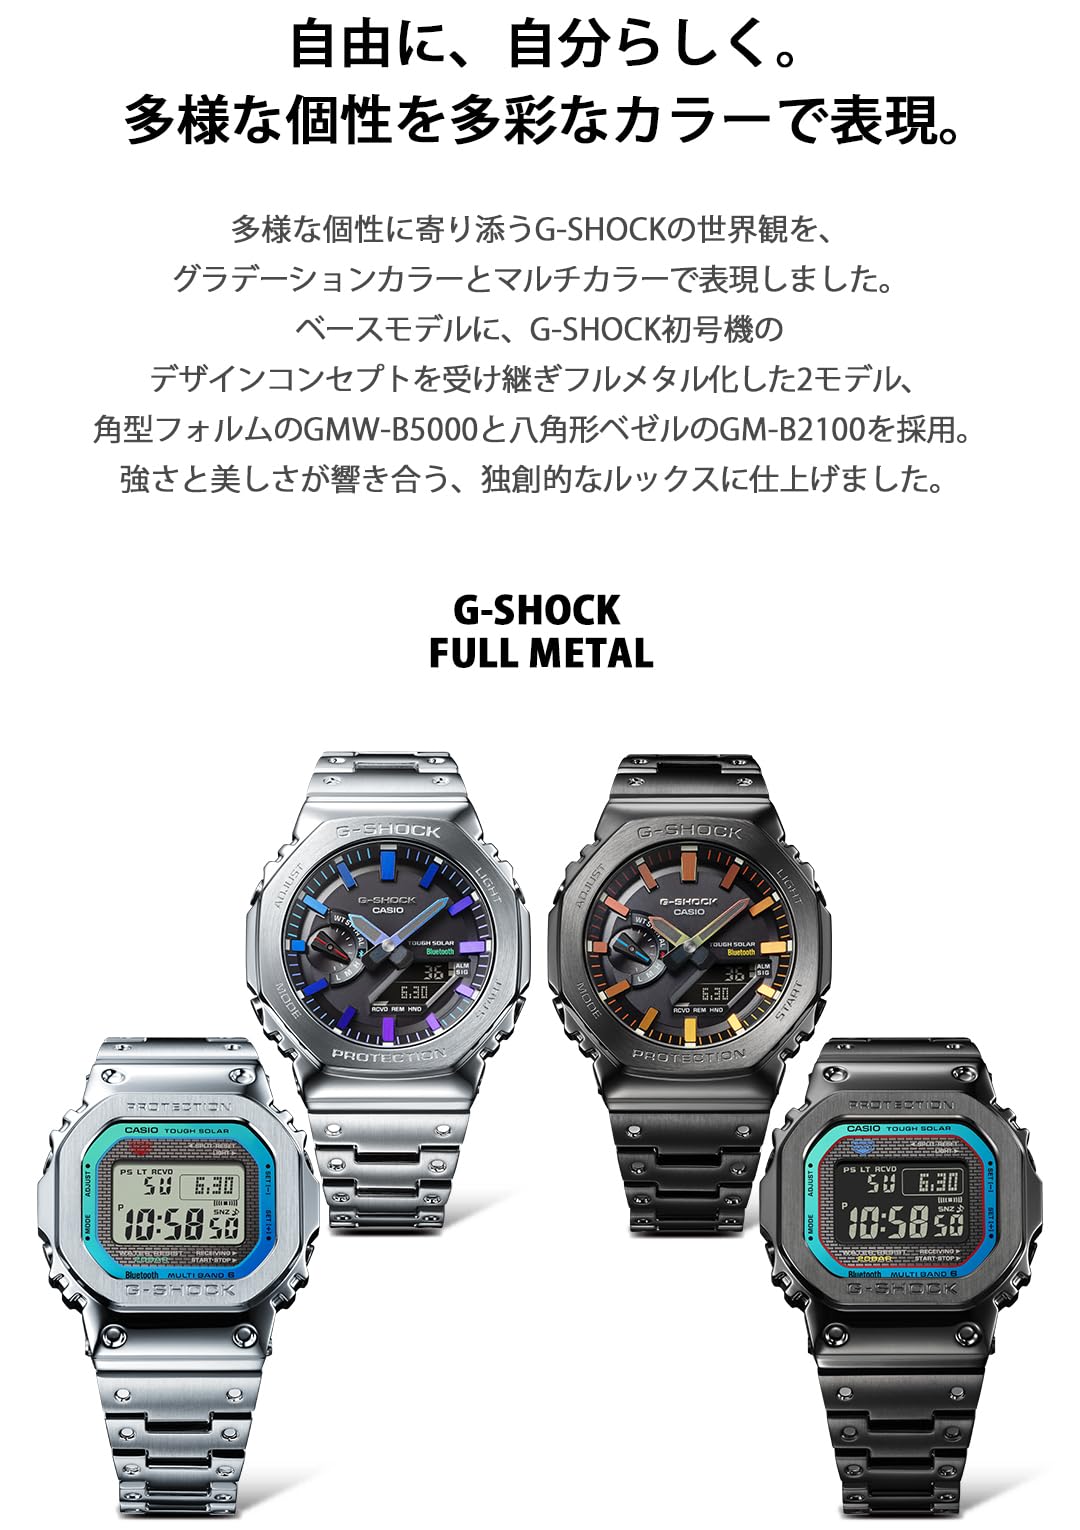 [カシオ] 腕時計 ジーショック【国内正規品】GM-B2100PC-1AJFメンズ シルバー - BanzaiHobby